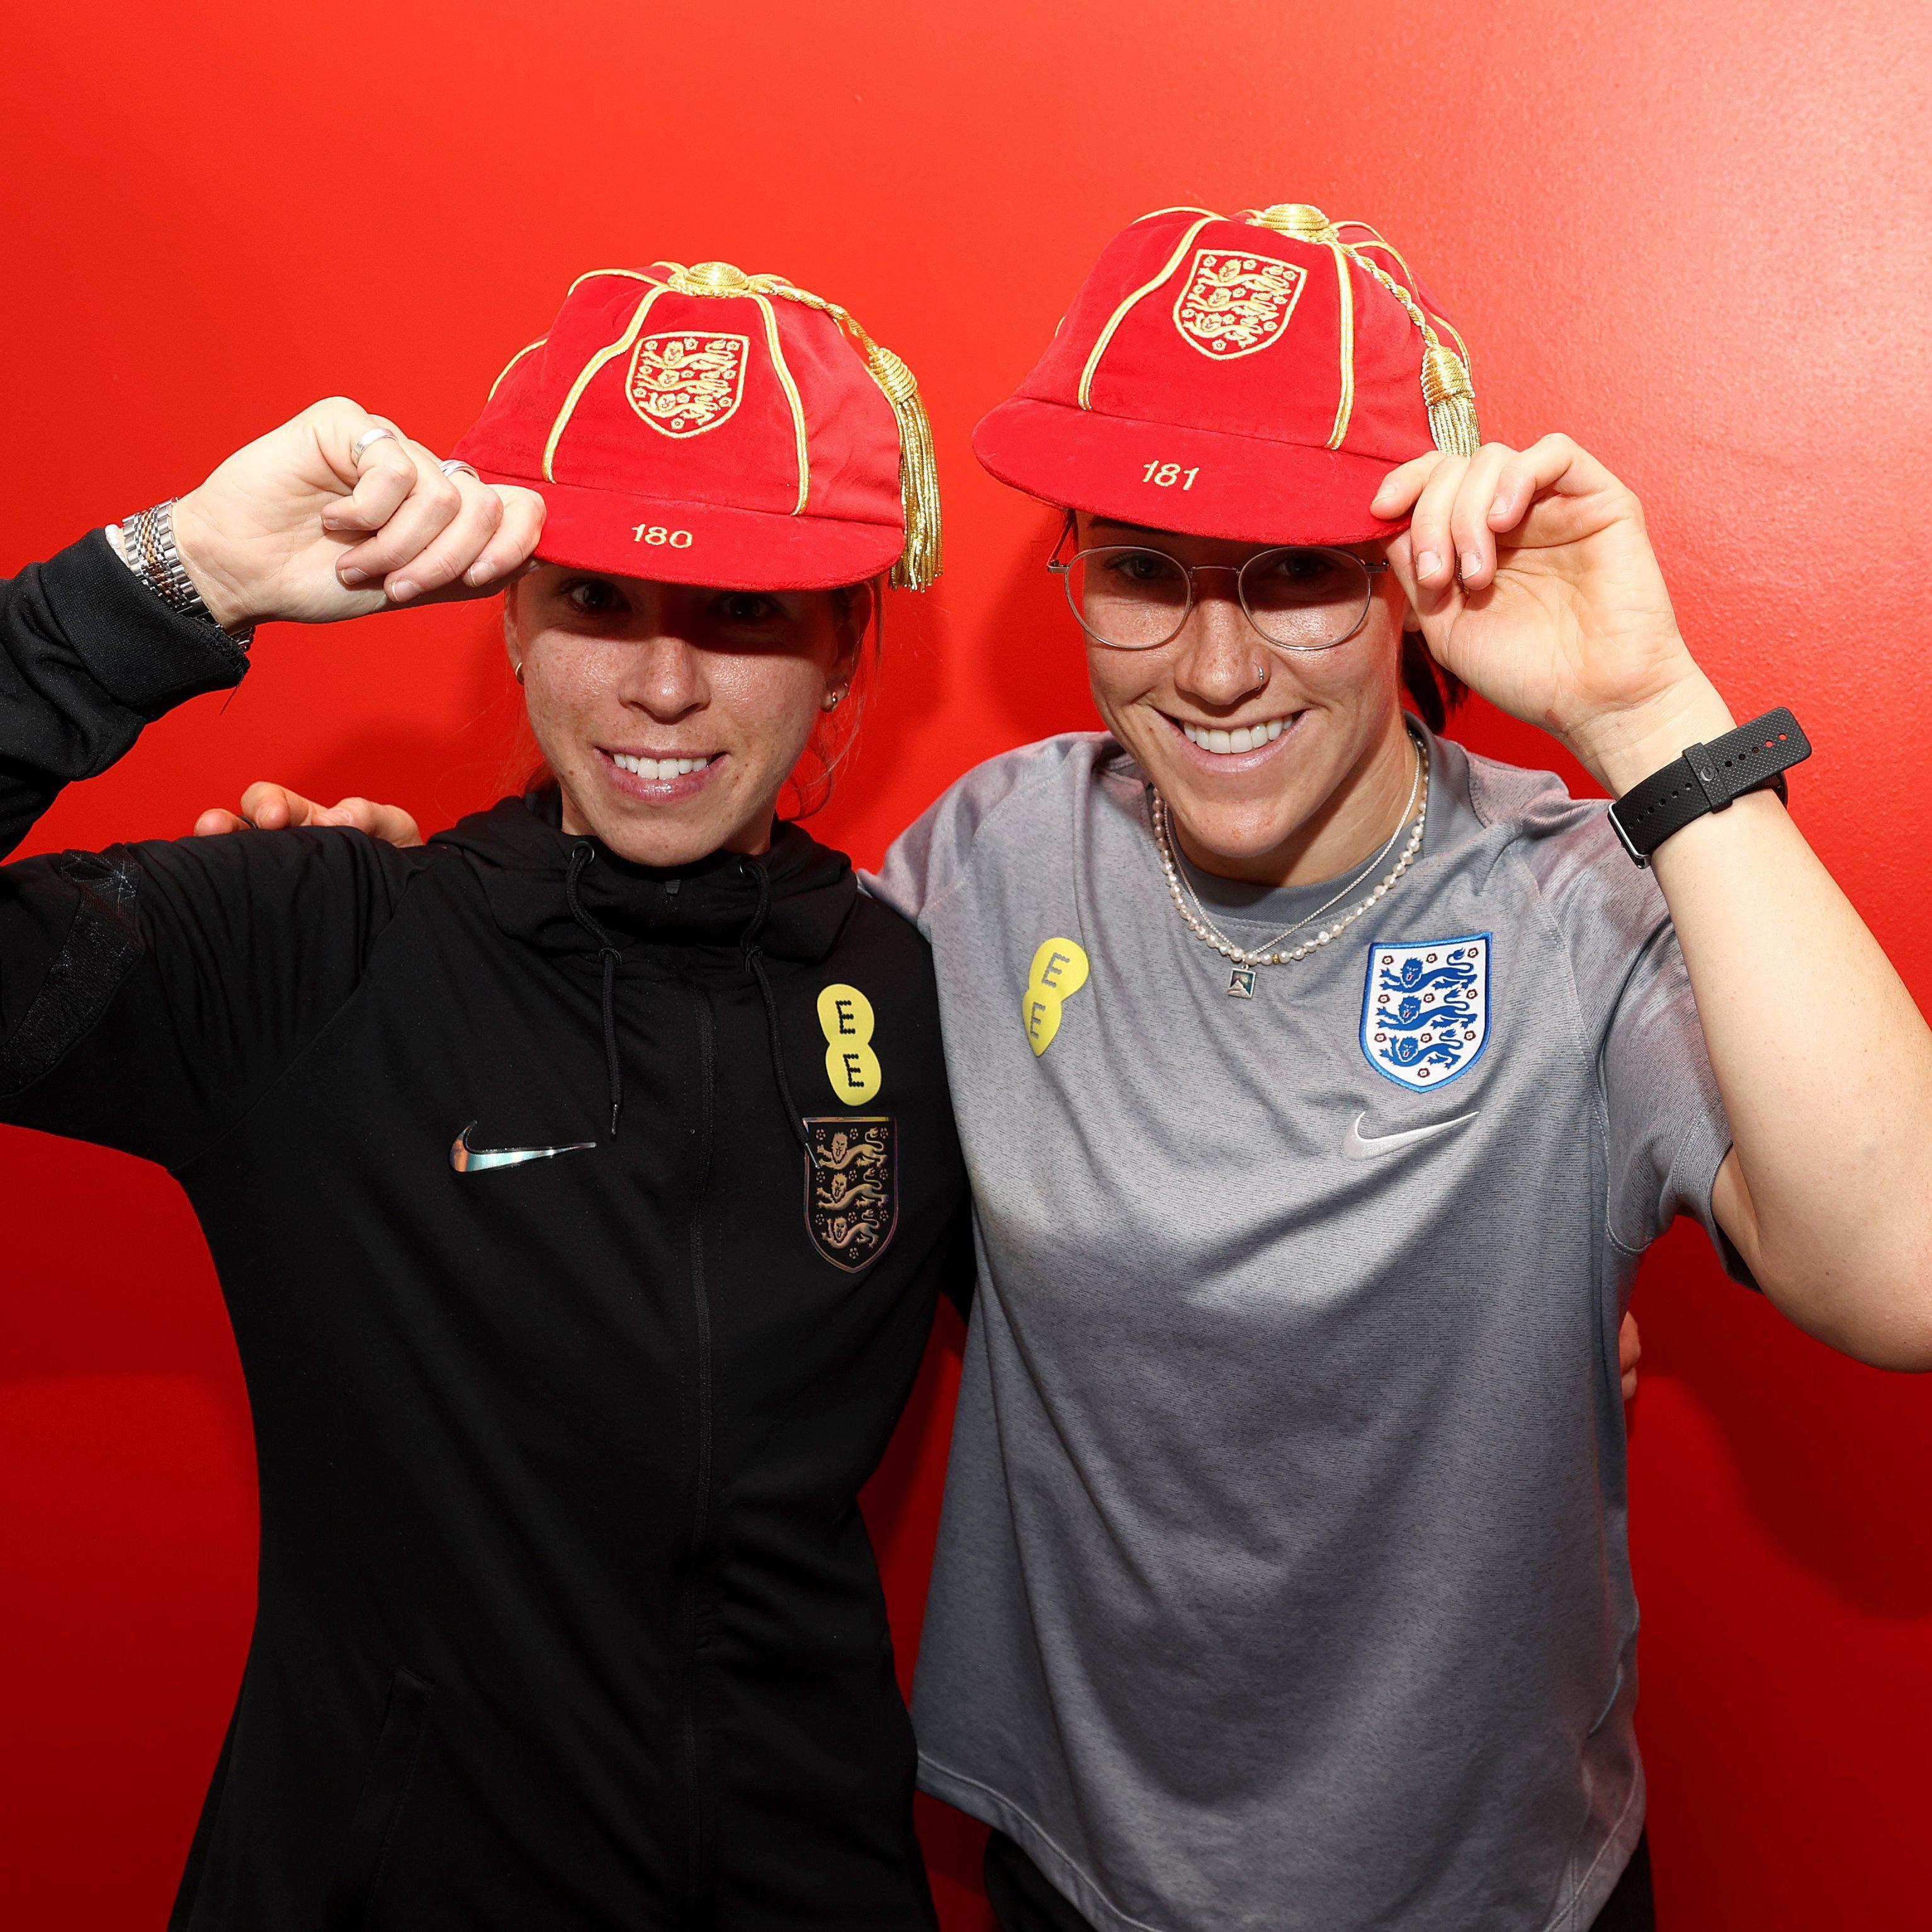 领取小红帽[鲜花]英格兰女足队员们领取了印有自己Legacy number的纪念(2)